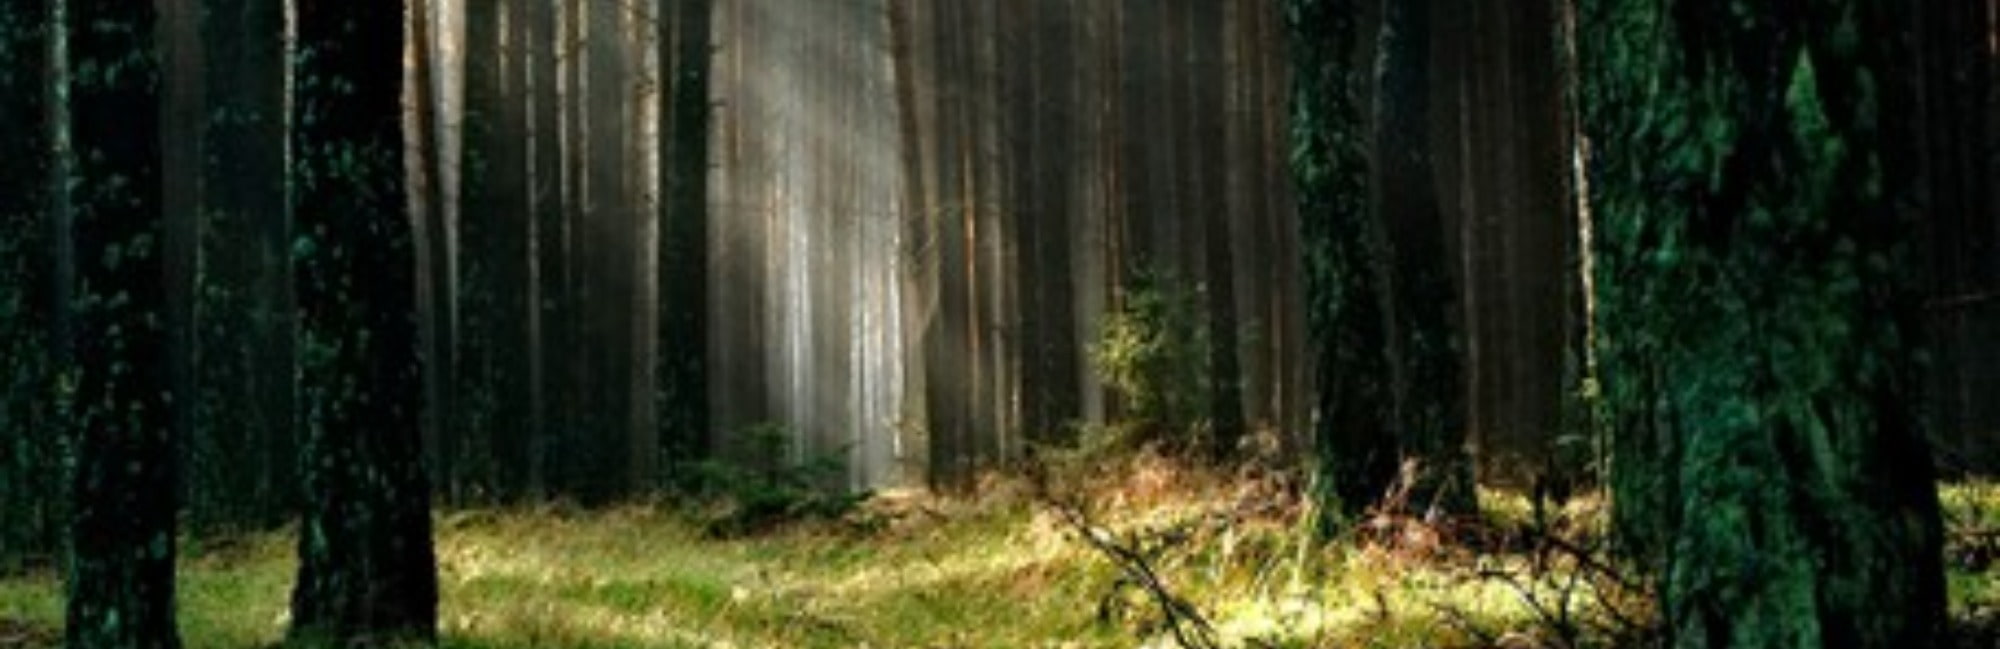 Dark woodland forest